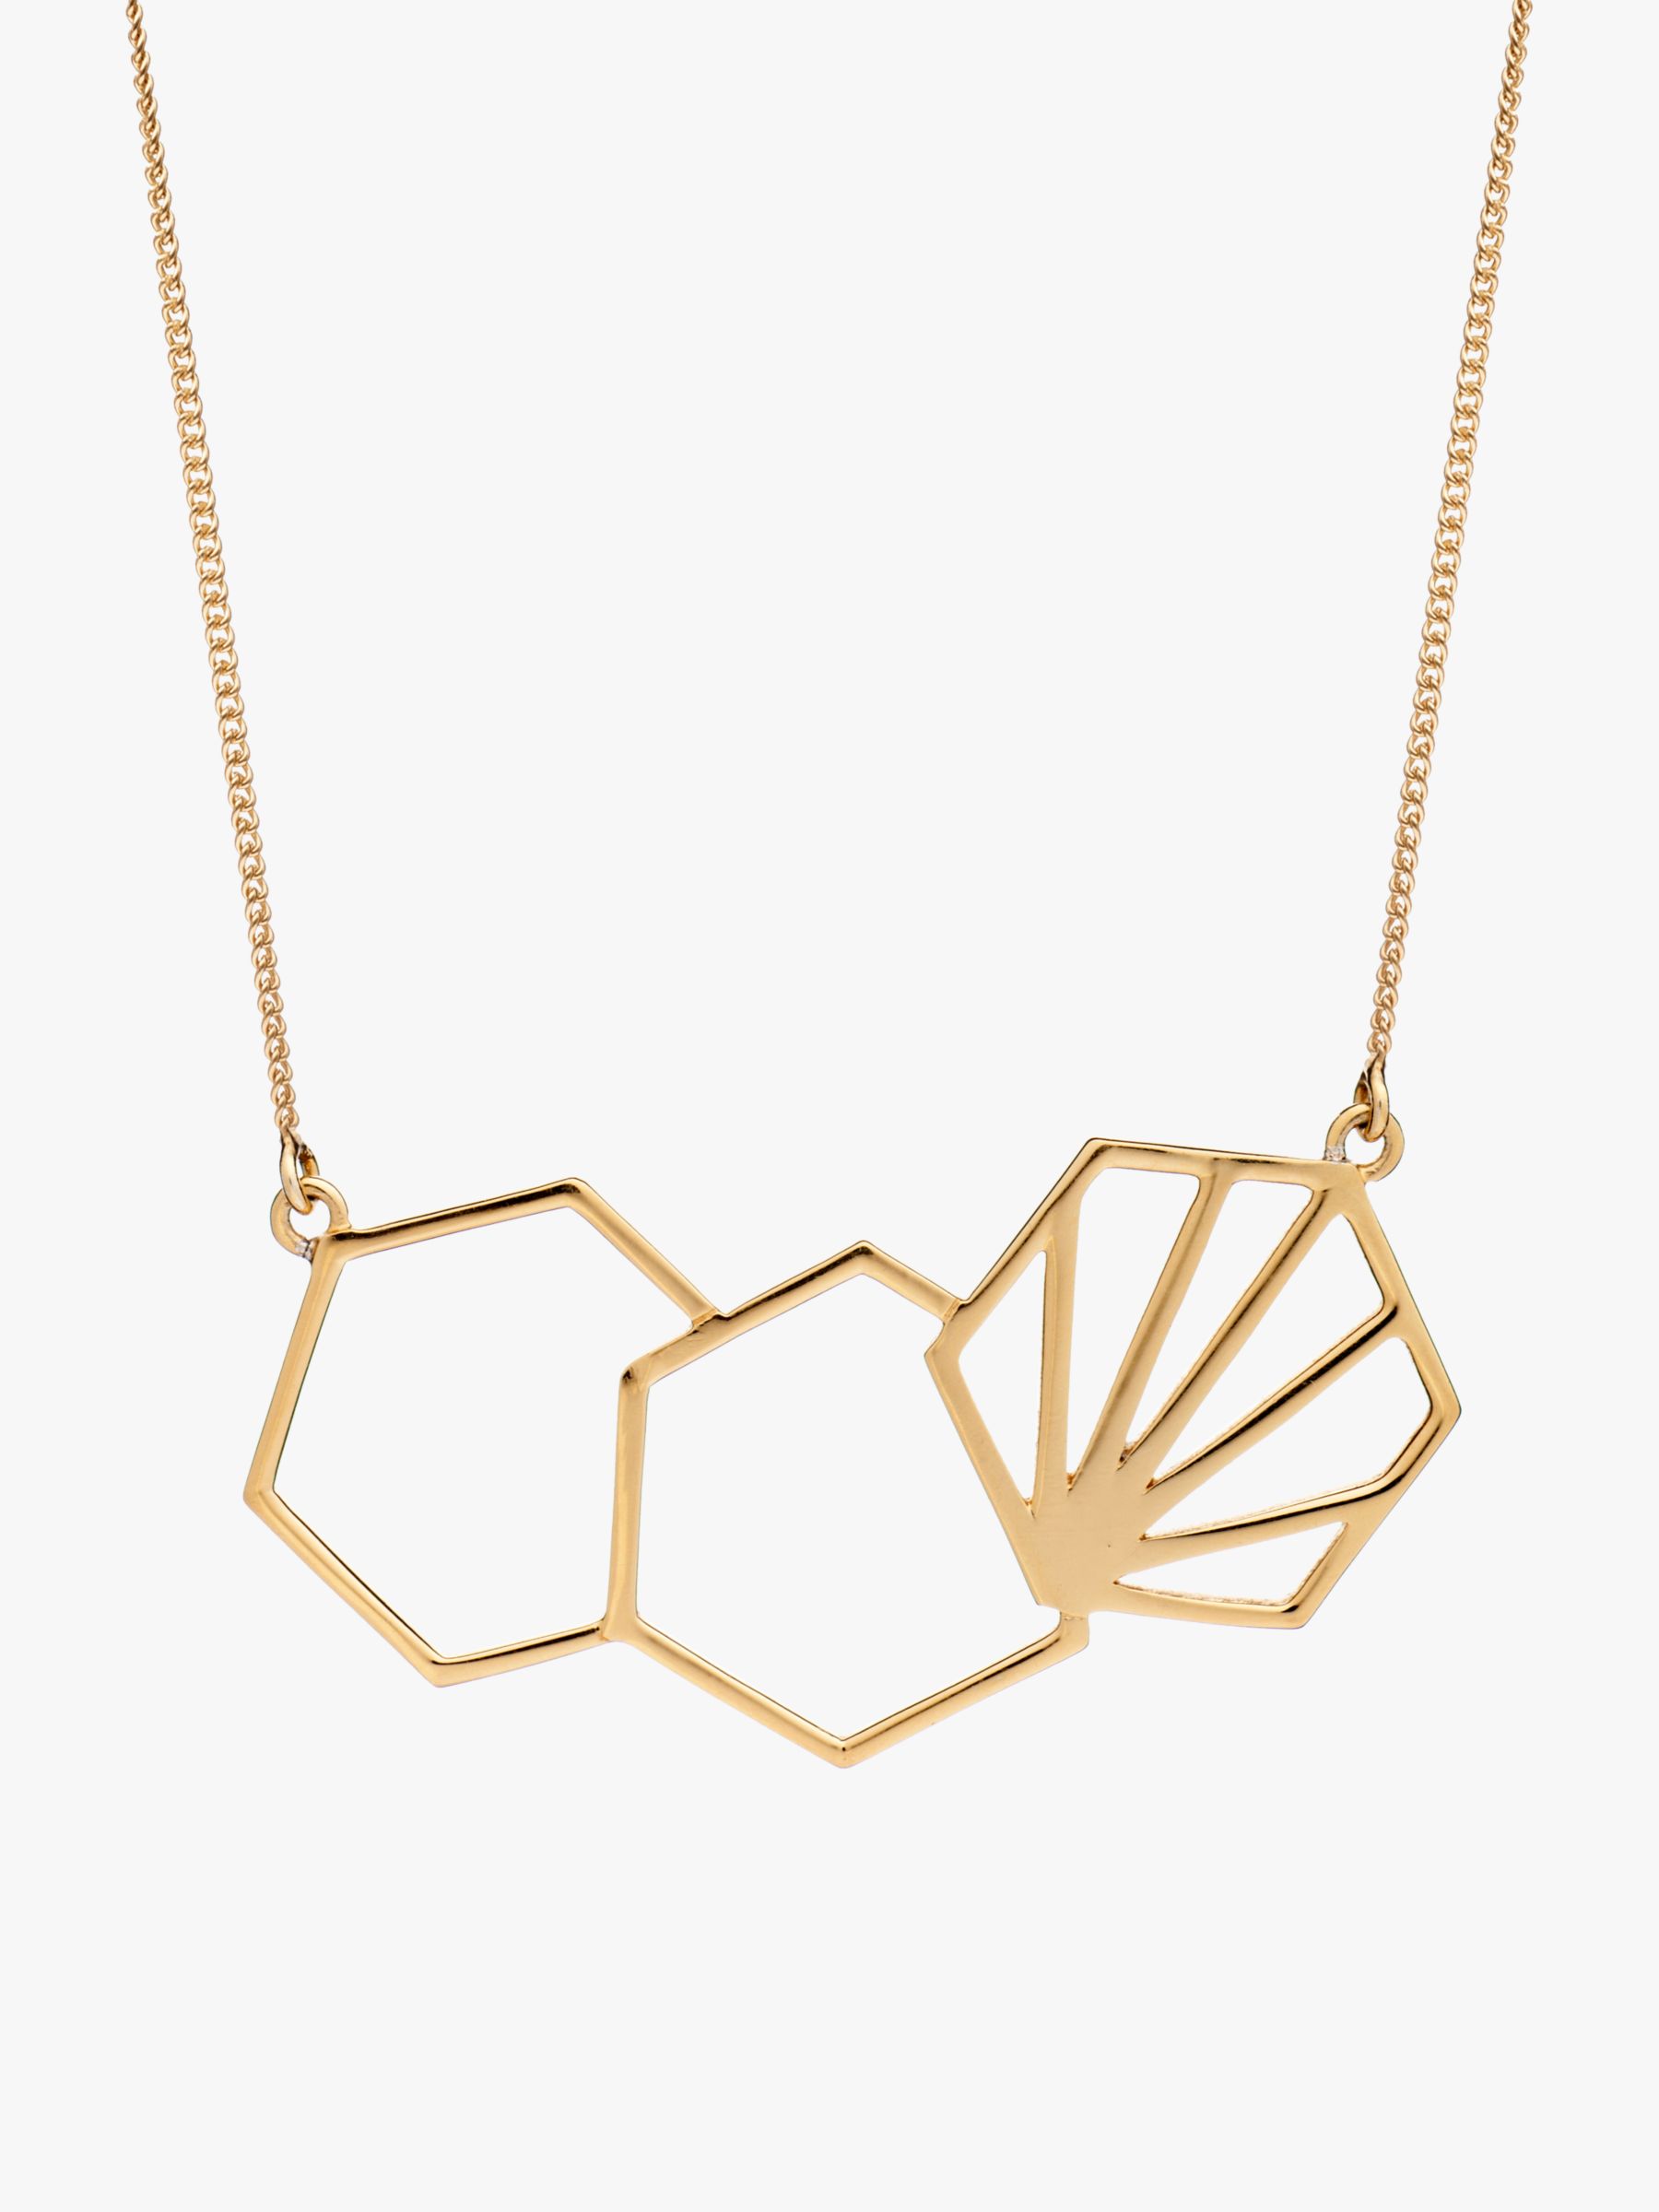 Rachel Jackson London 3 Hexagon Necklace